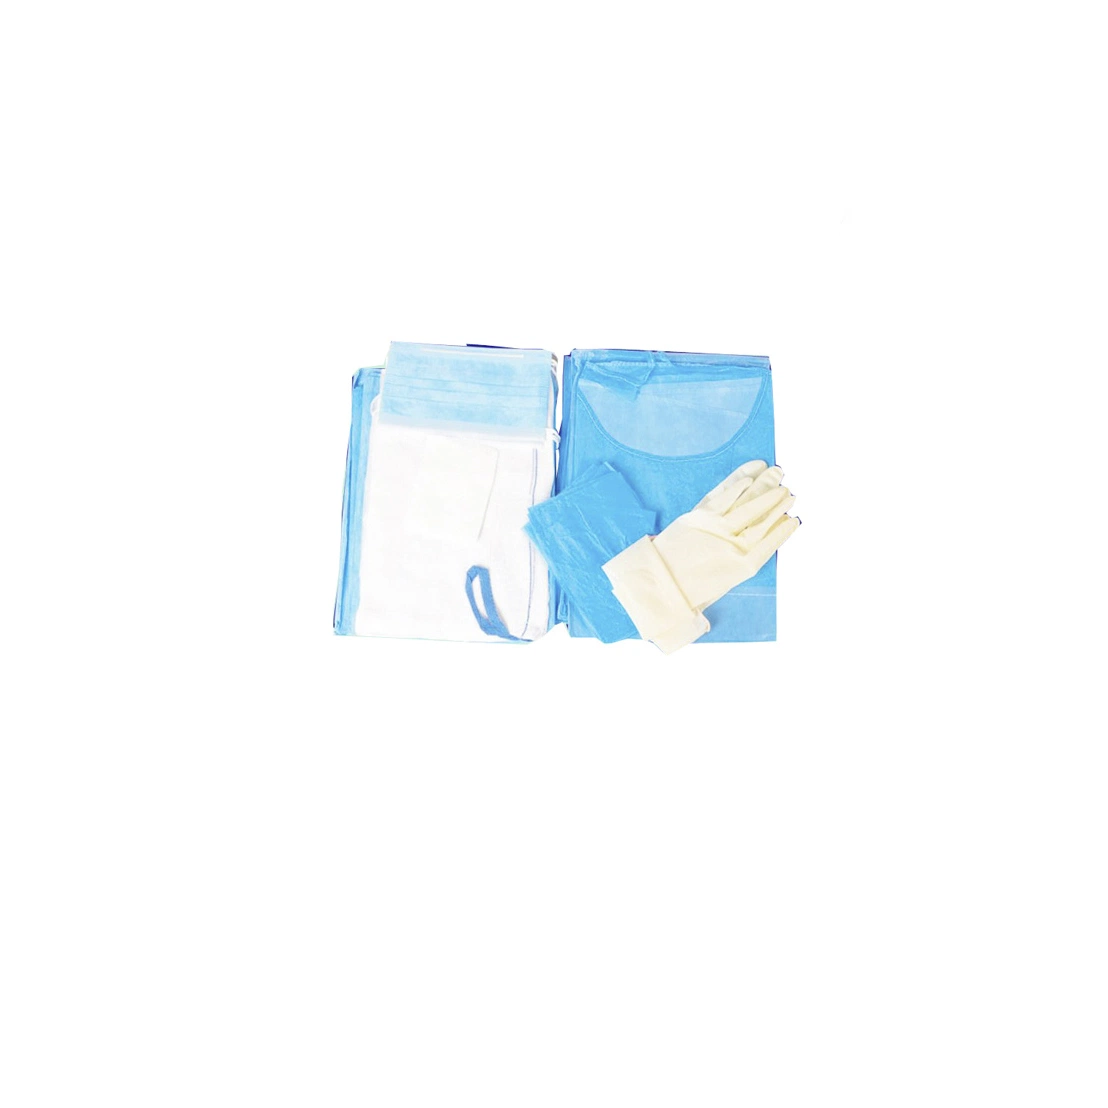 Estéreis descartáveis Médico Kit Médico /Non-Woven Azul vestido cirúrgica definida